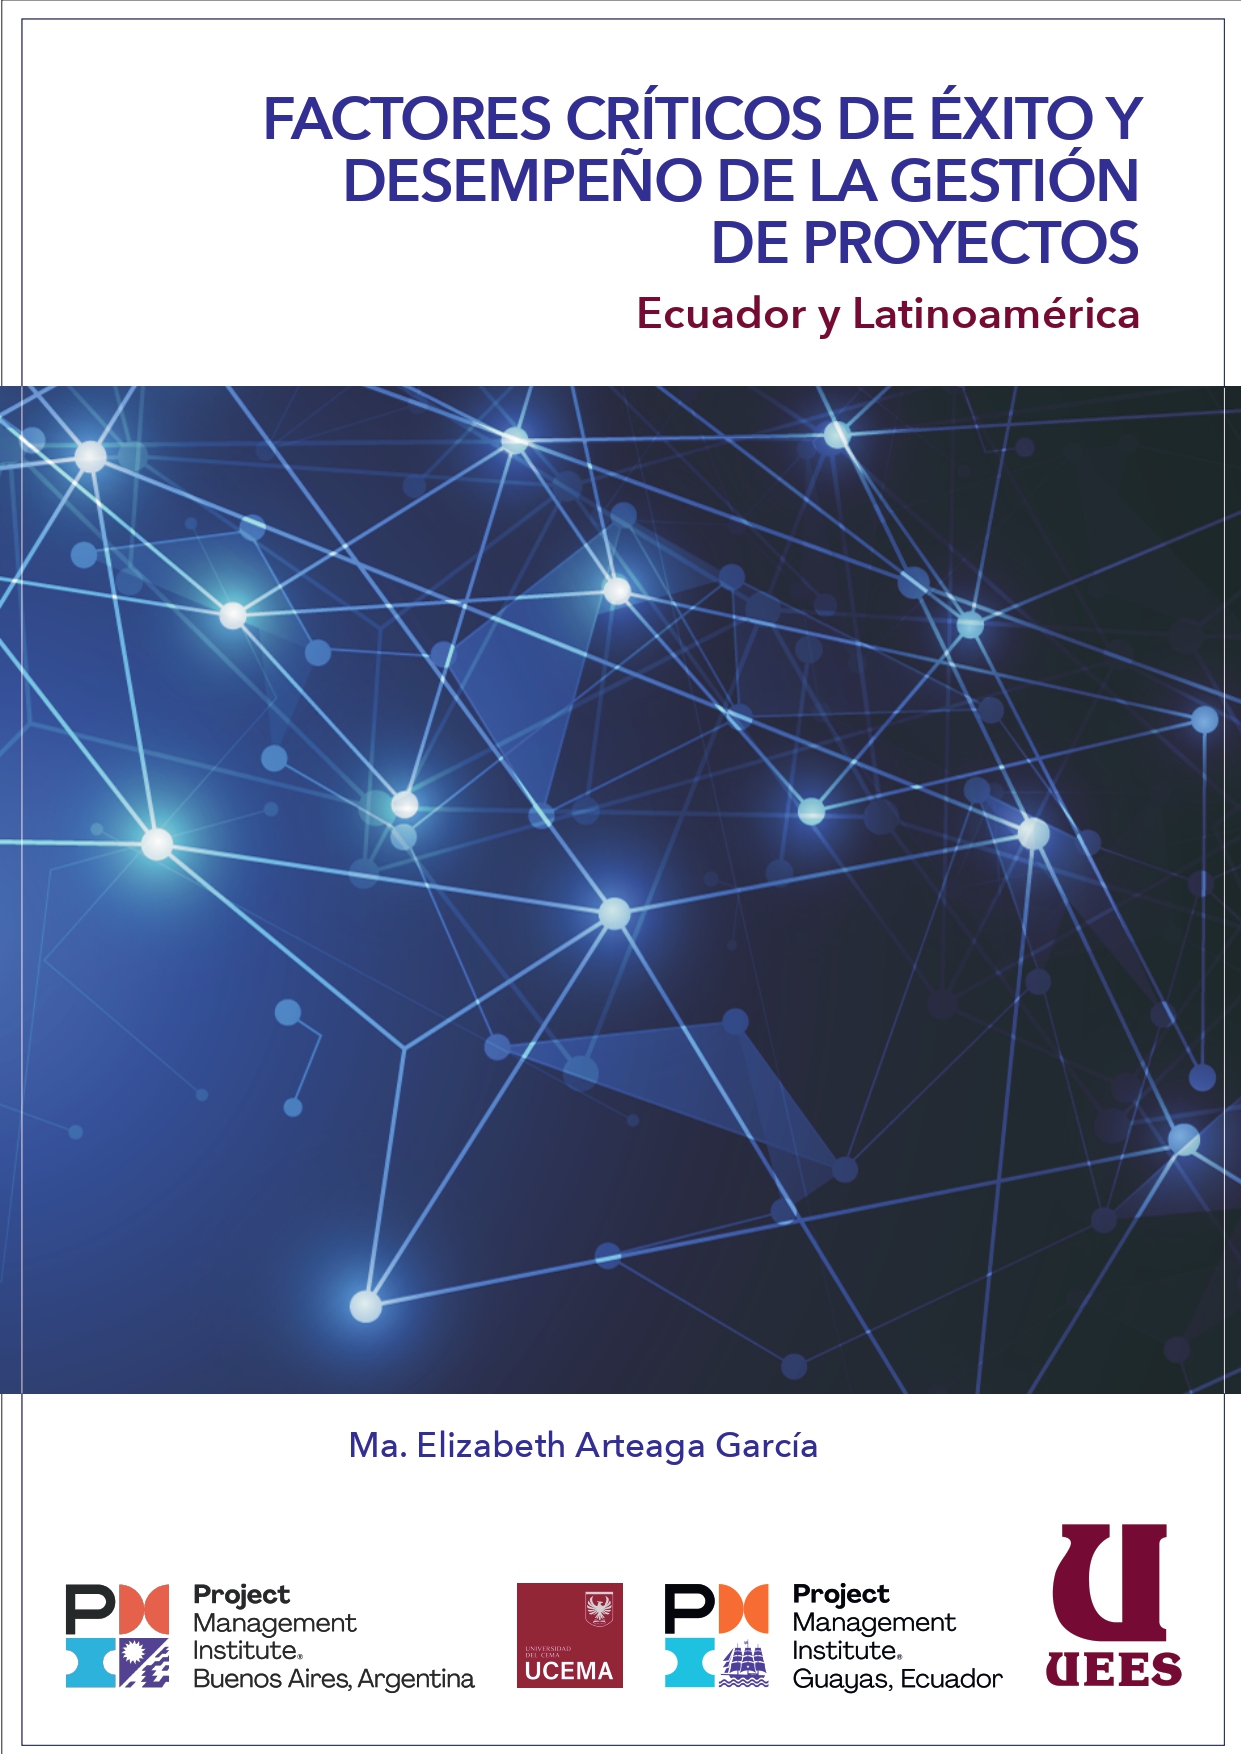 Factores Críticos de Éxito y Desempeño de la Gestión de Proyectos: Ecuador y Latinoamérica